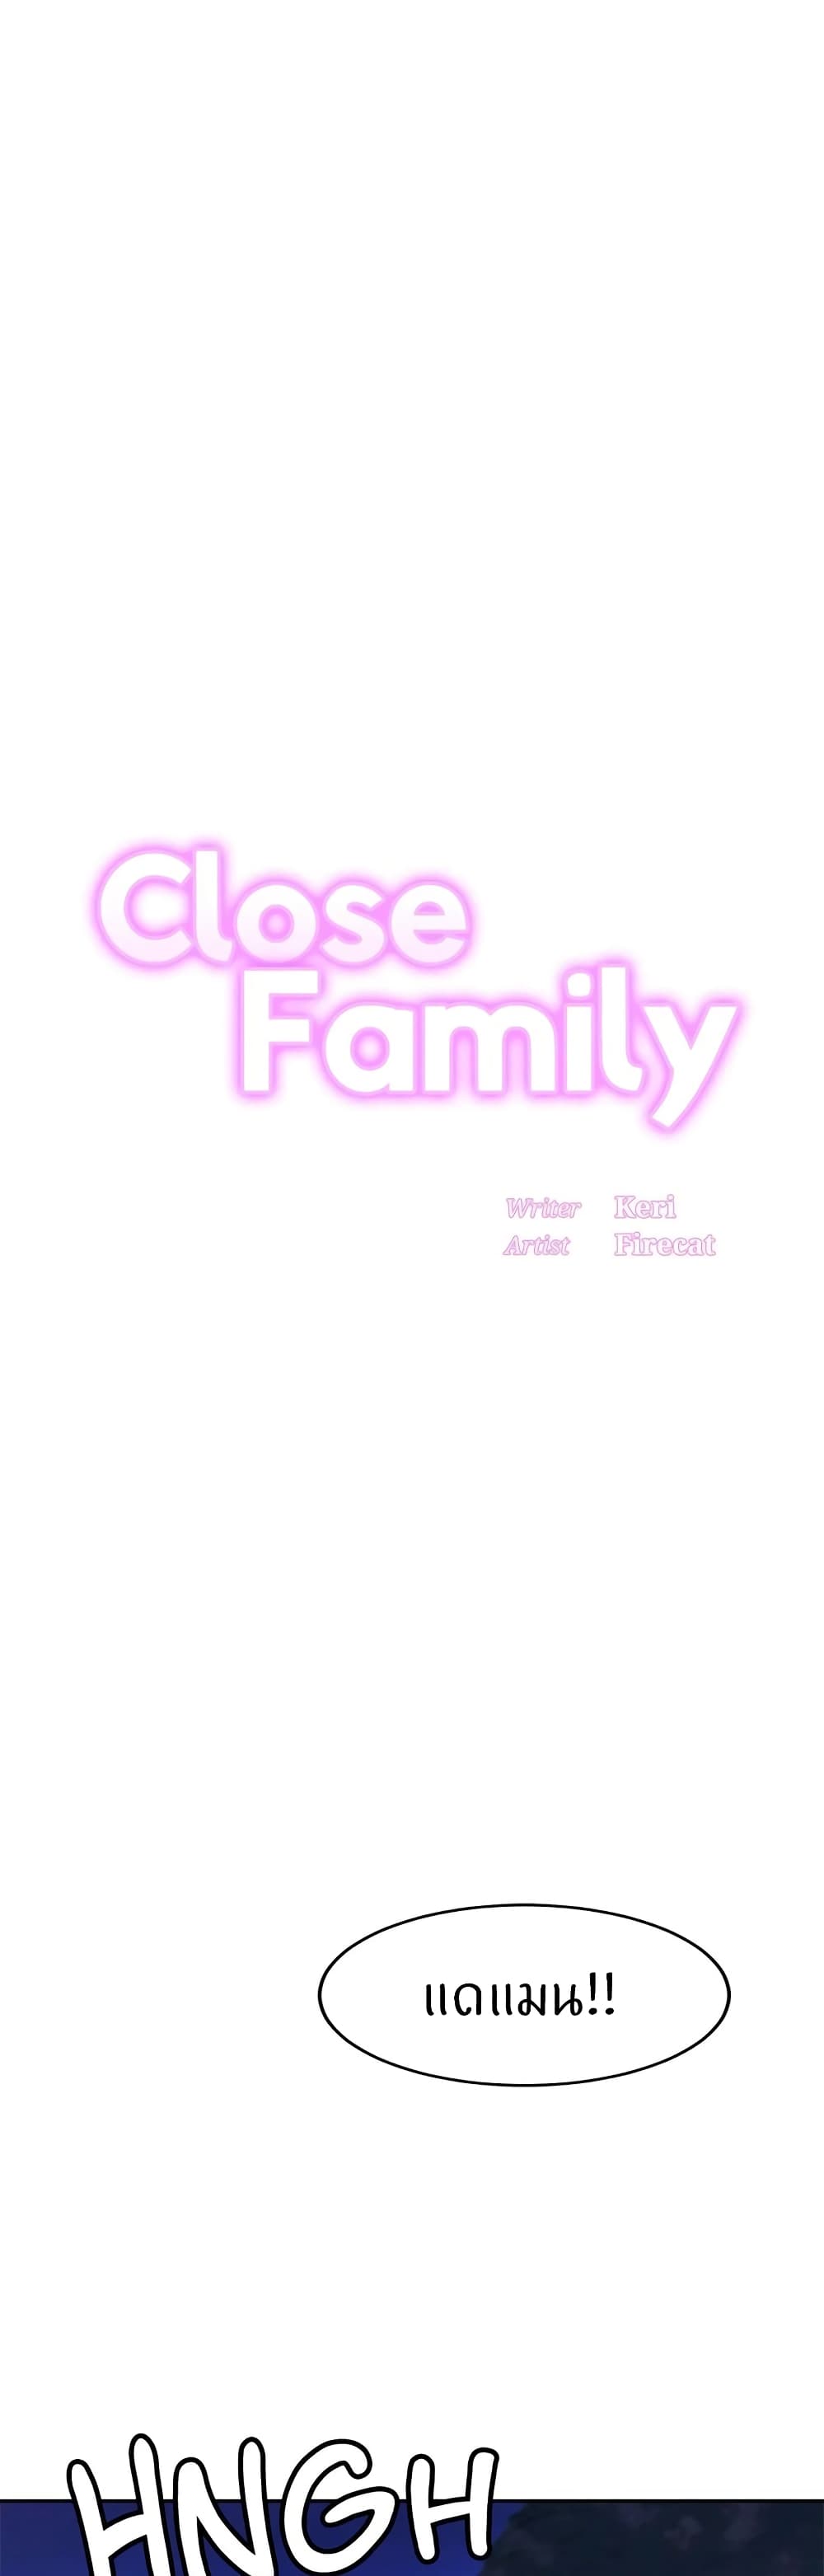 Close Family 38 (1)